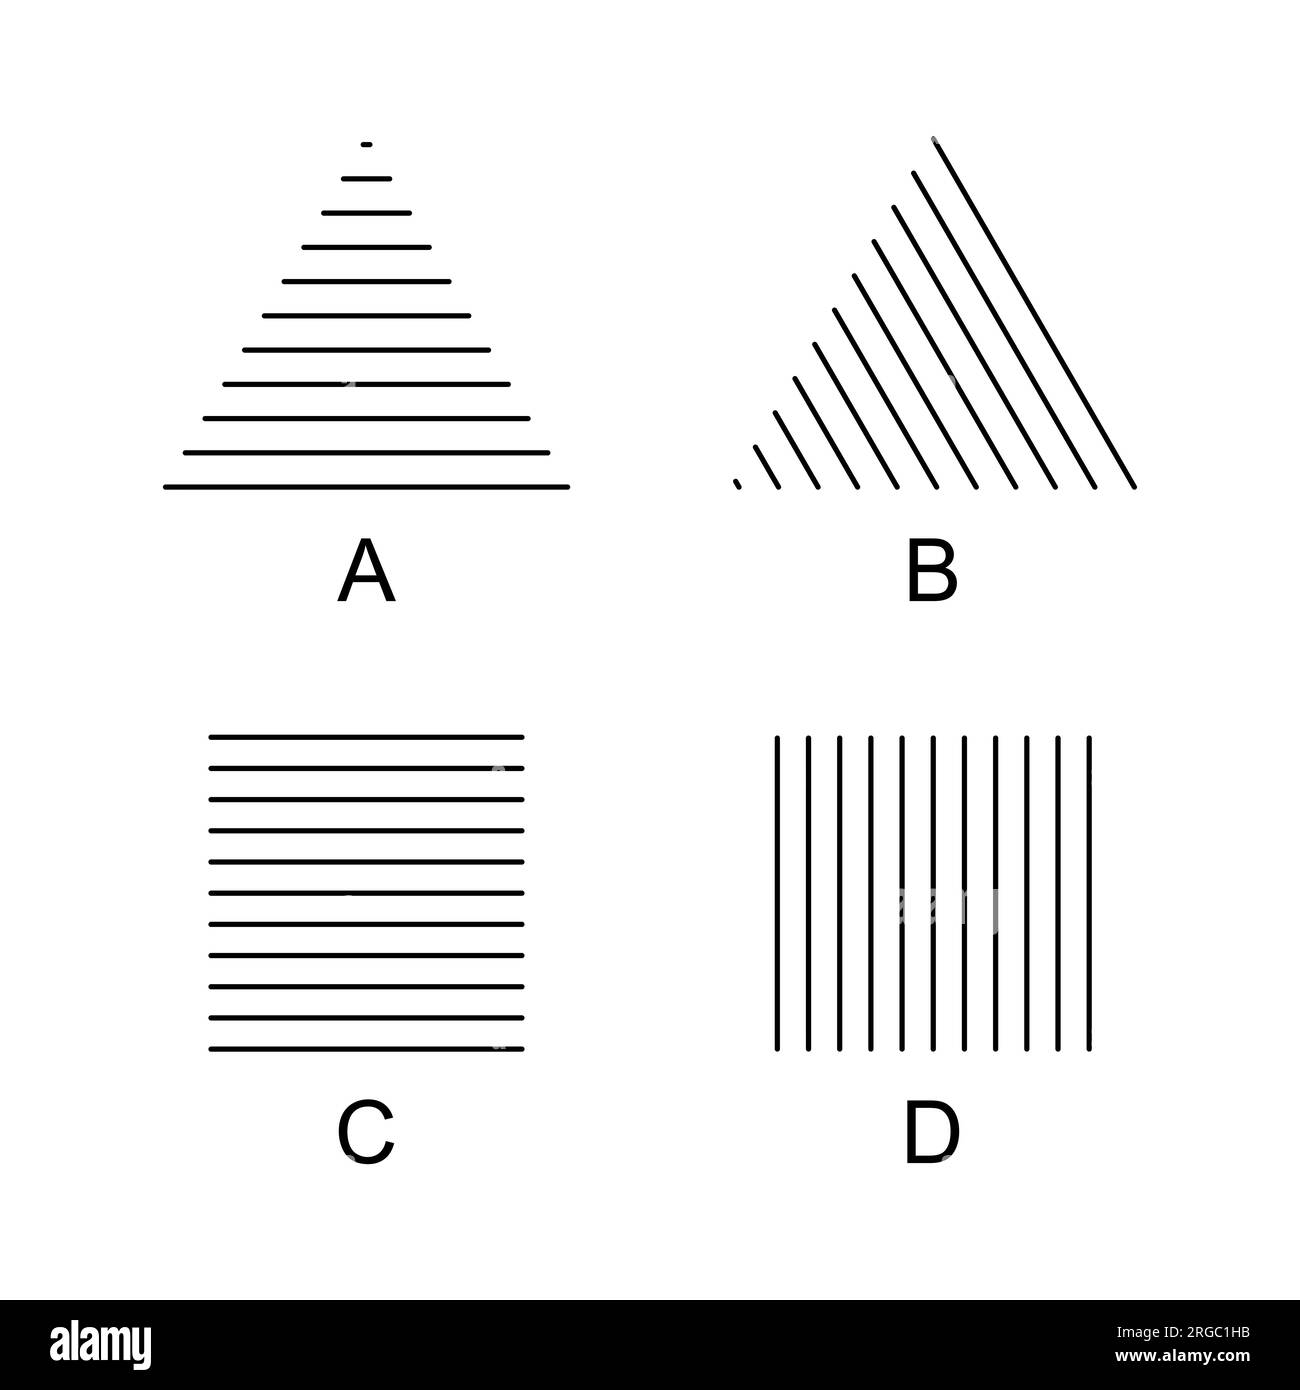 Helmholtz triángulos y cuadrados ilusiones ópticas. Un triangulo aparece más alto (A), parece moverse a la derecha (B), un cuadrado aparece más alto (C) o más ancho (D). Foto de stock